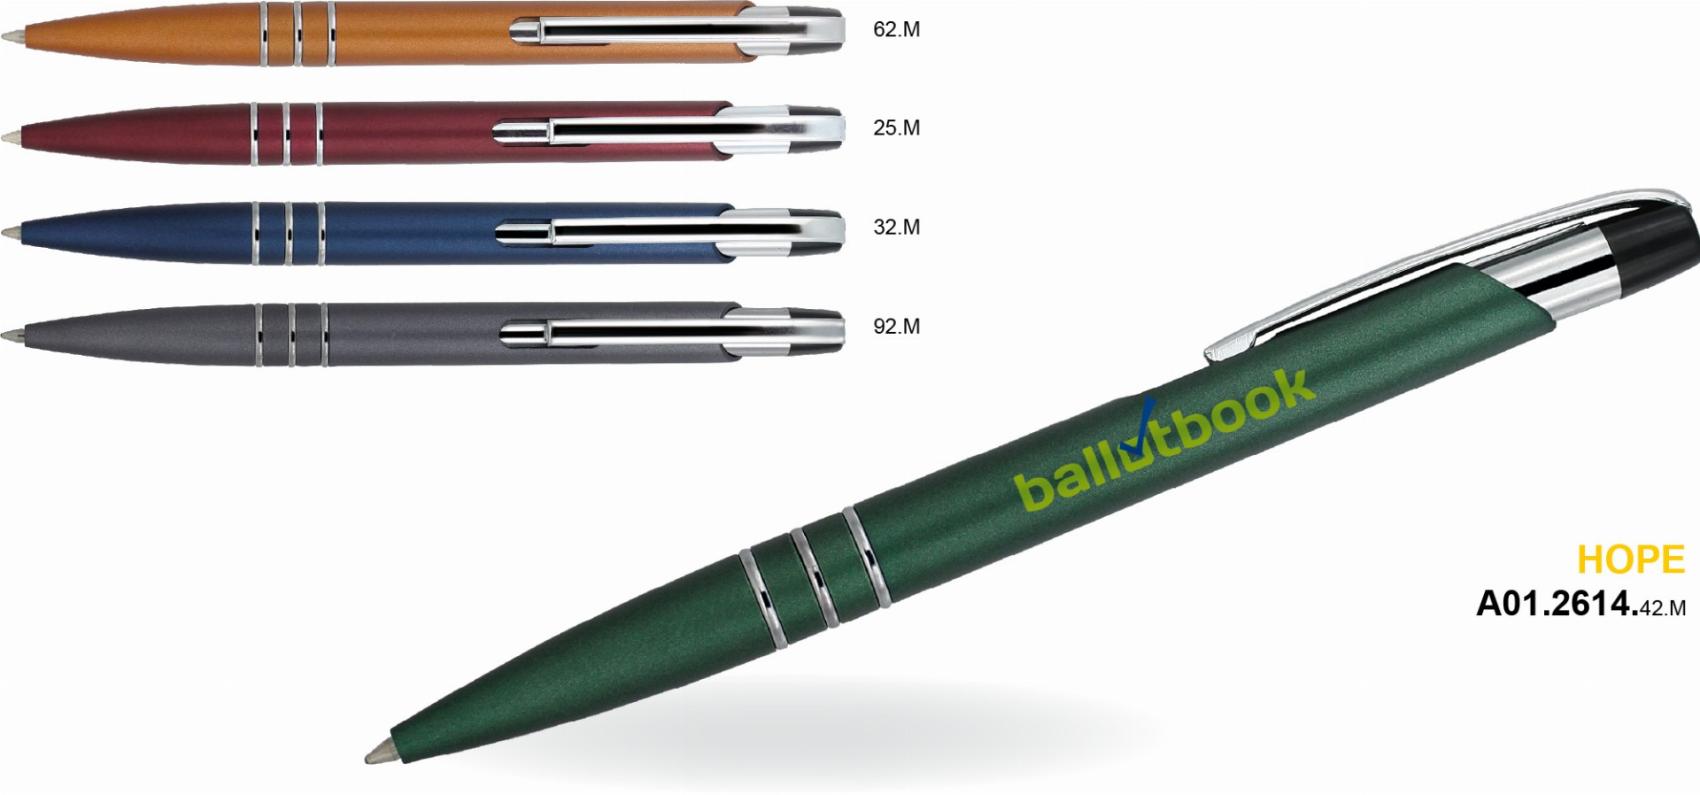 Kulikov pero Hope EMPEN plastov s kovovmi doplky mix barev - Kliknutm na obrzek zavete